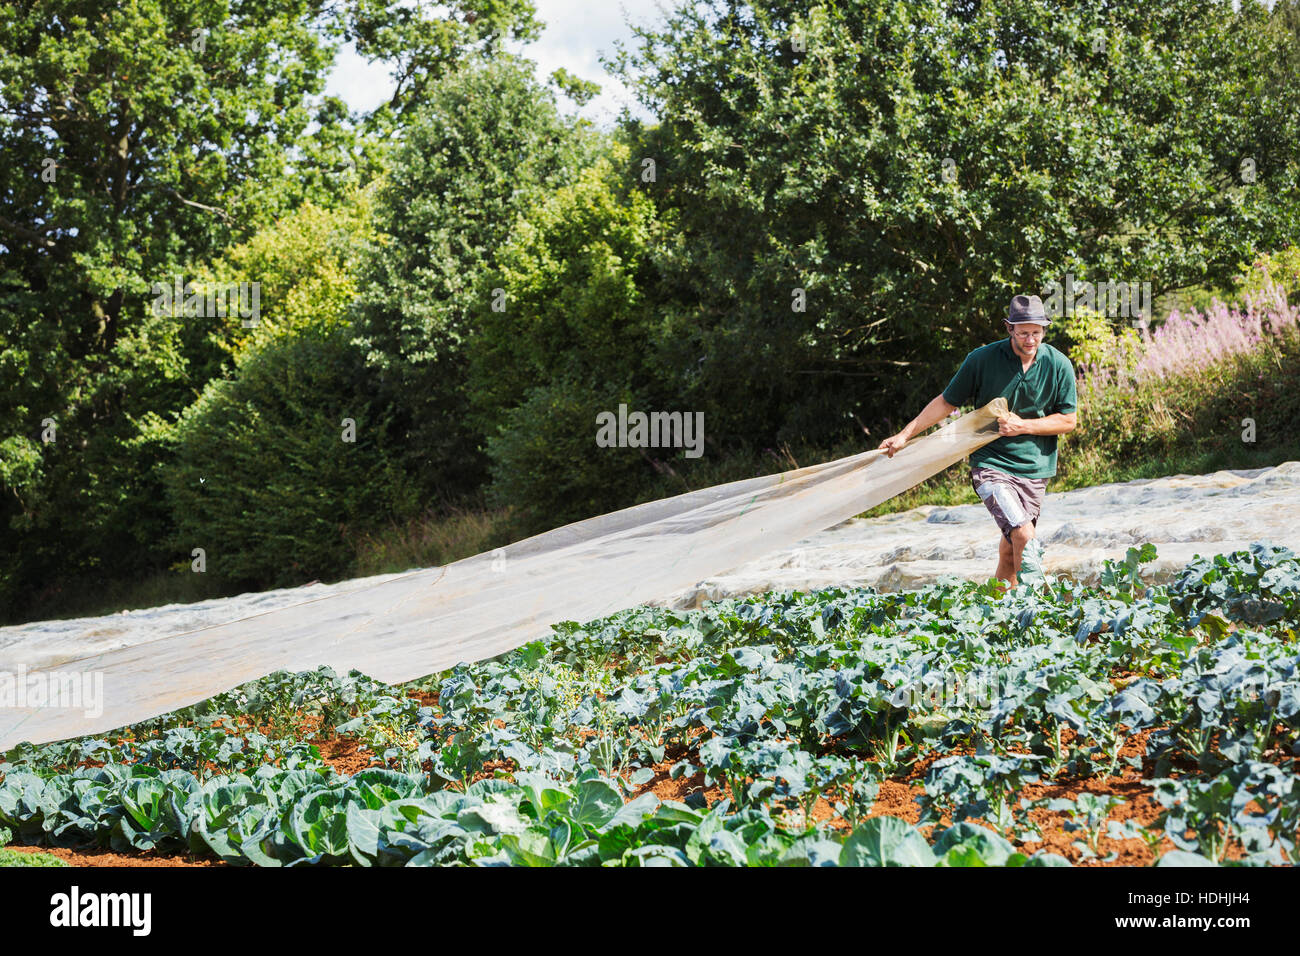 Un hombre tirando una hoja de vellón hortícola a través de un cultivo de plantas de col rizada. Foto de stock